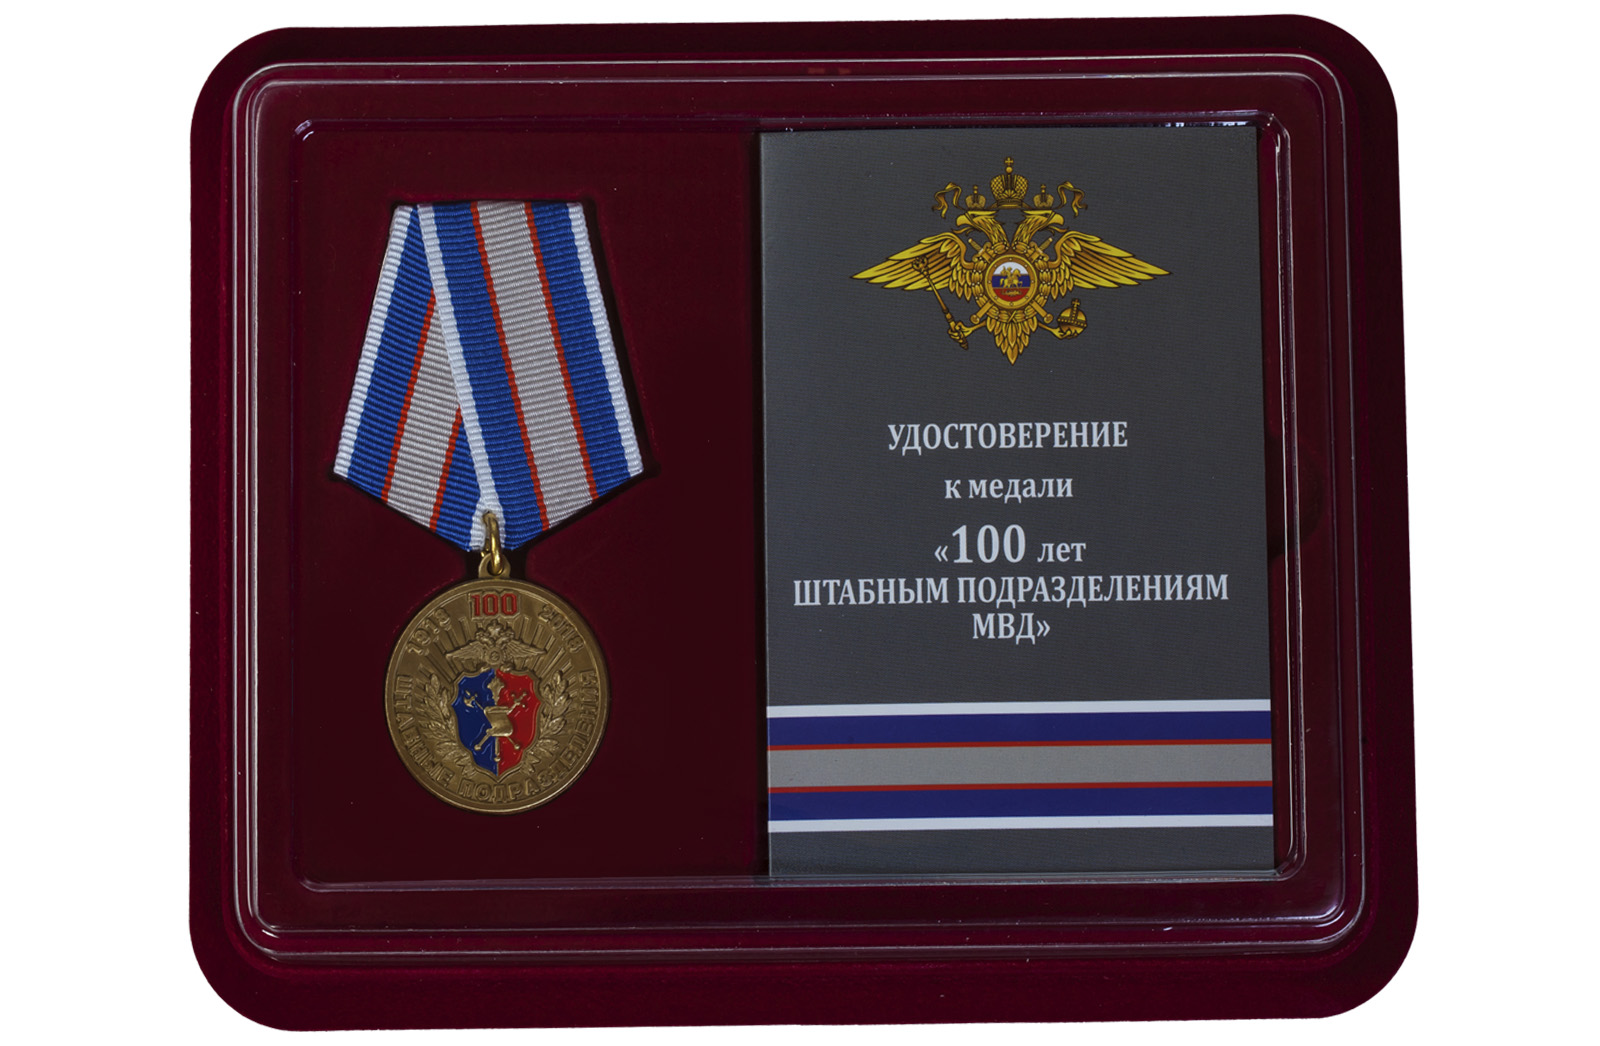 Медаль МВД РФ "100 лет Штабным подразделениям" 